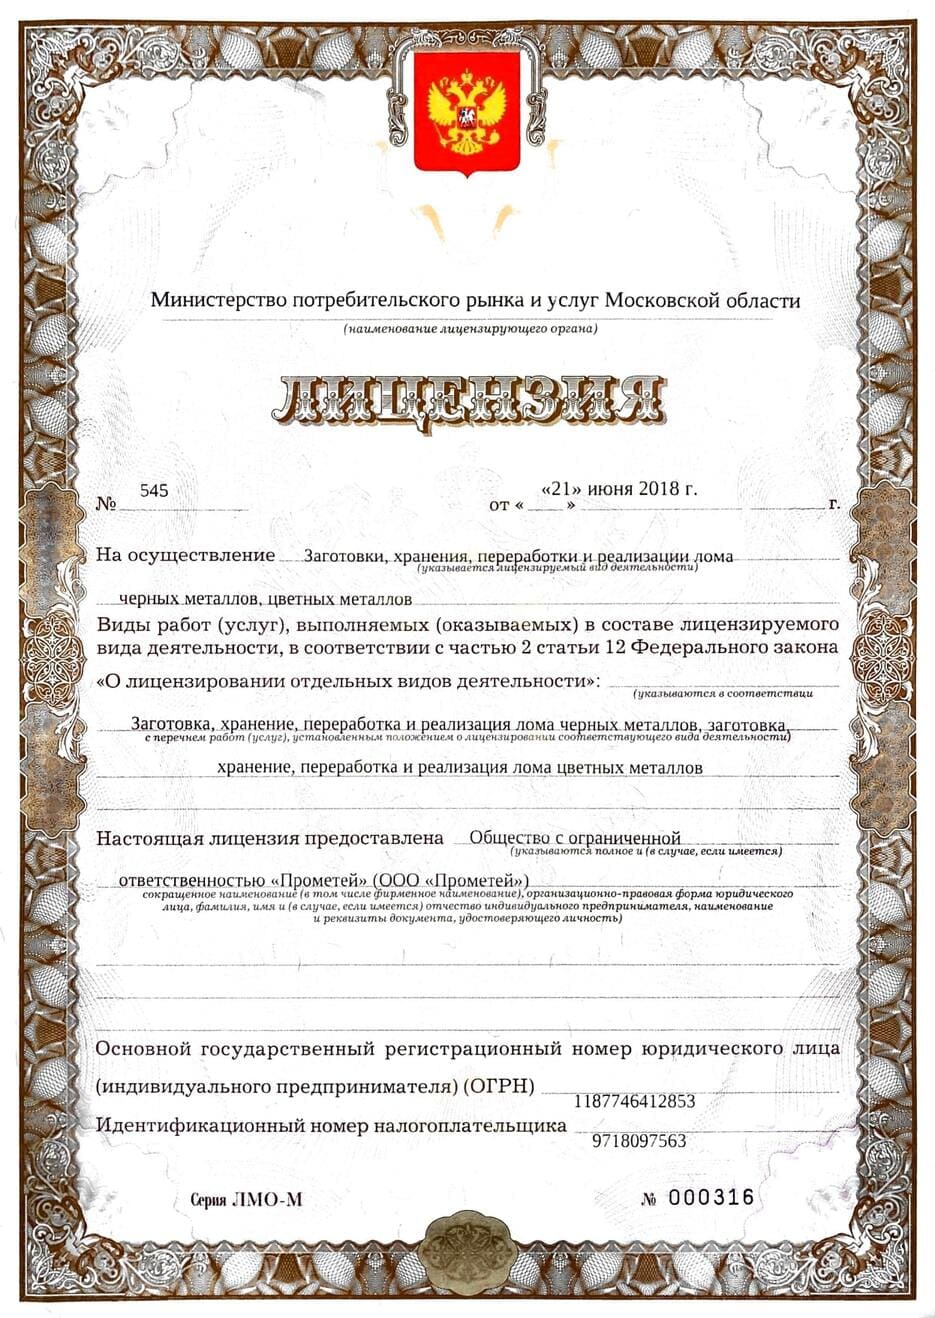 Первая страница лицензии на прием и заготовку металлолома